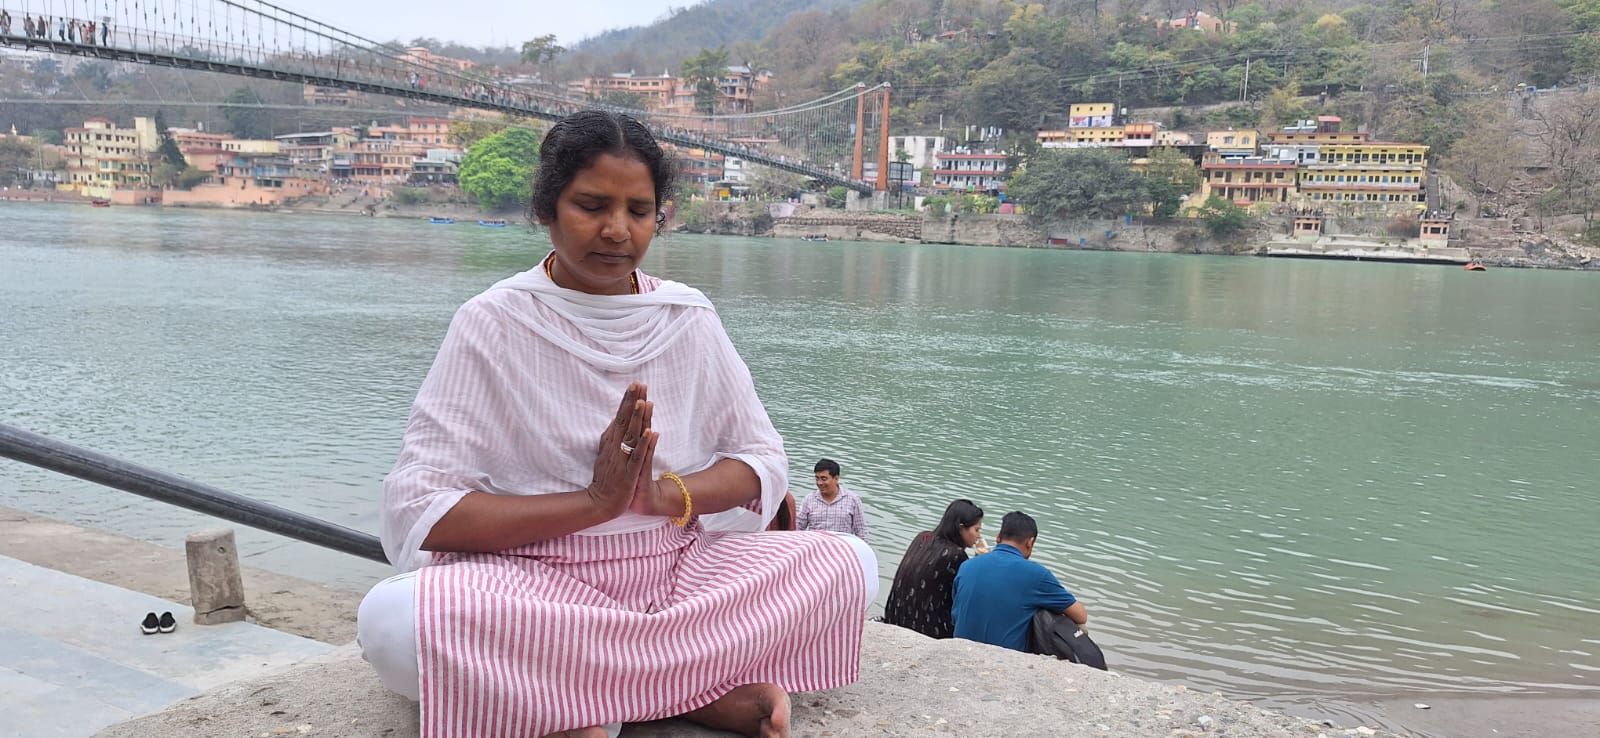 Nuns’ ashram becomes beacon of interfaith harmony – Matters India